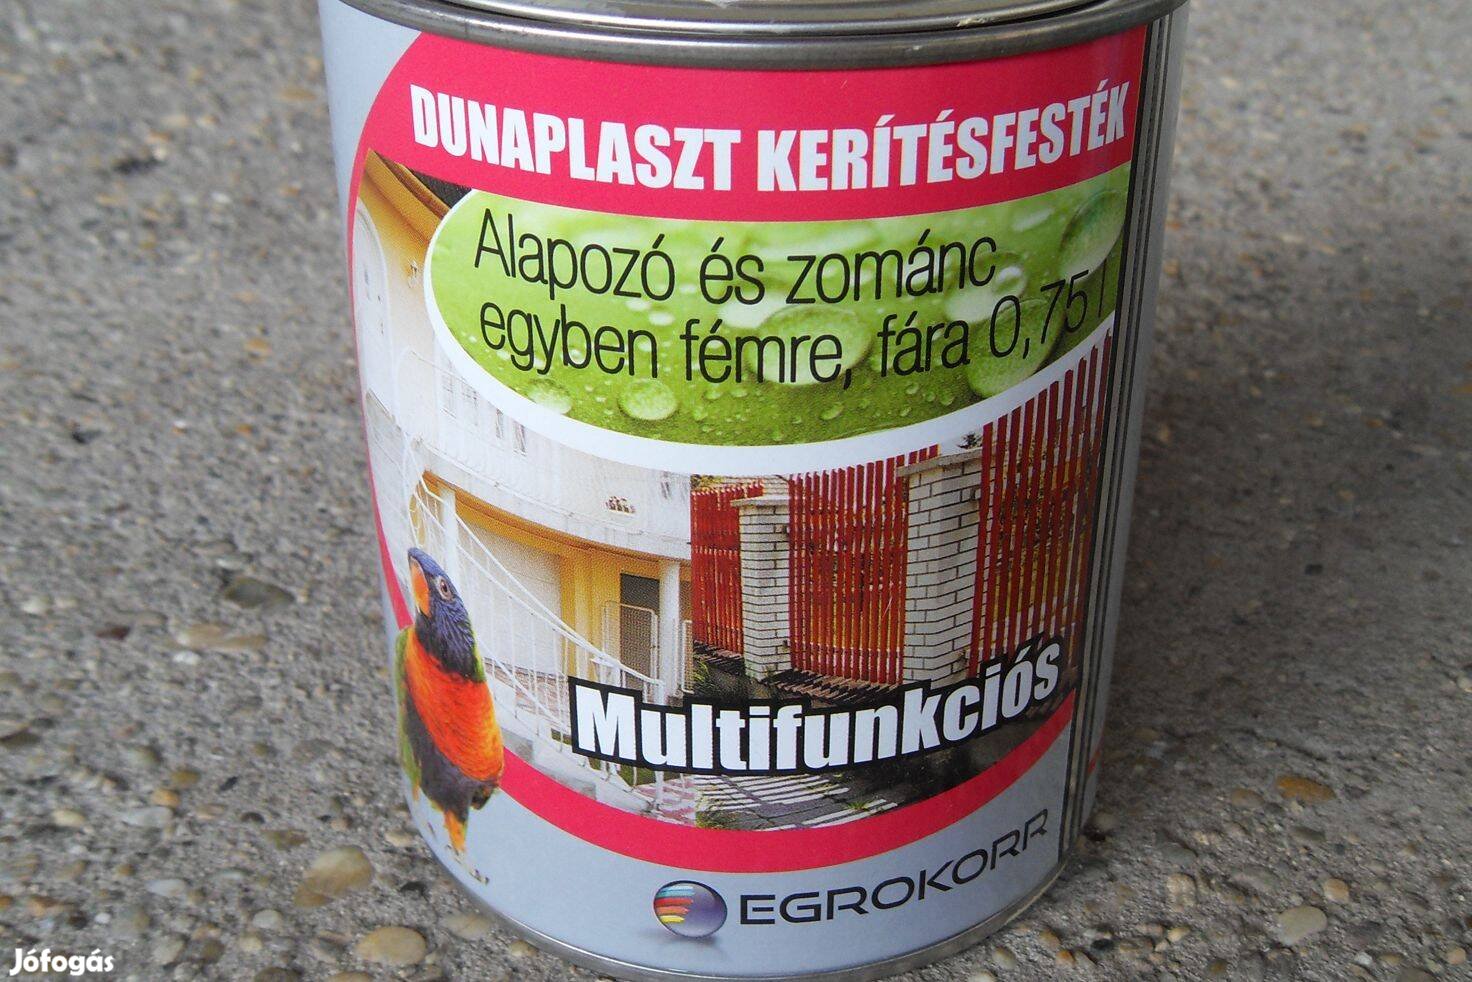 Egrokorr Dunaplaszt kerítésfesték - krém - 0,75 l